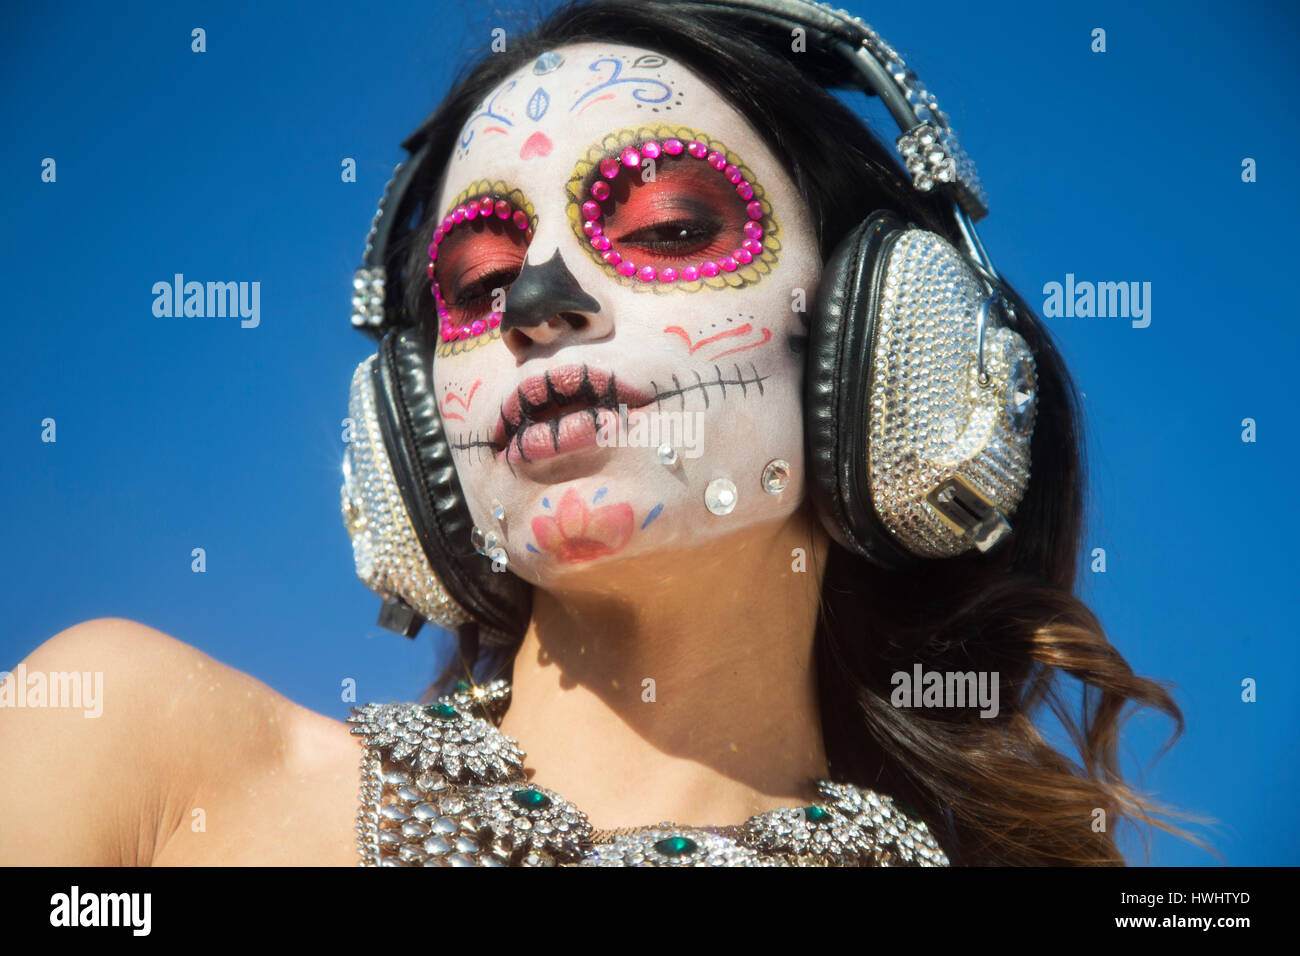 Belle femme avec des bonbons personnalisés, crâne le jour des morts mexicain composent face Banque D'Images